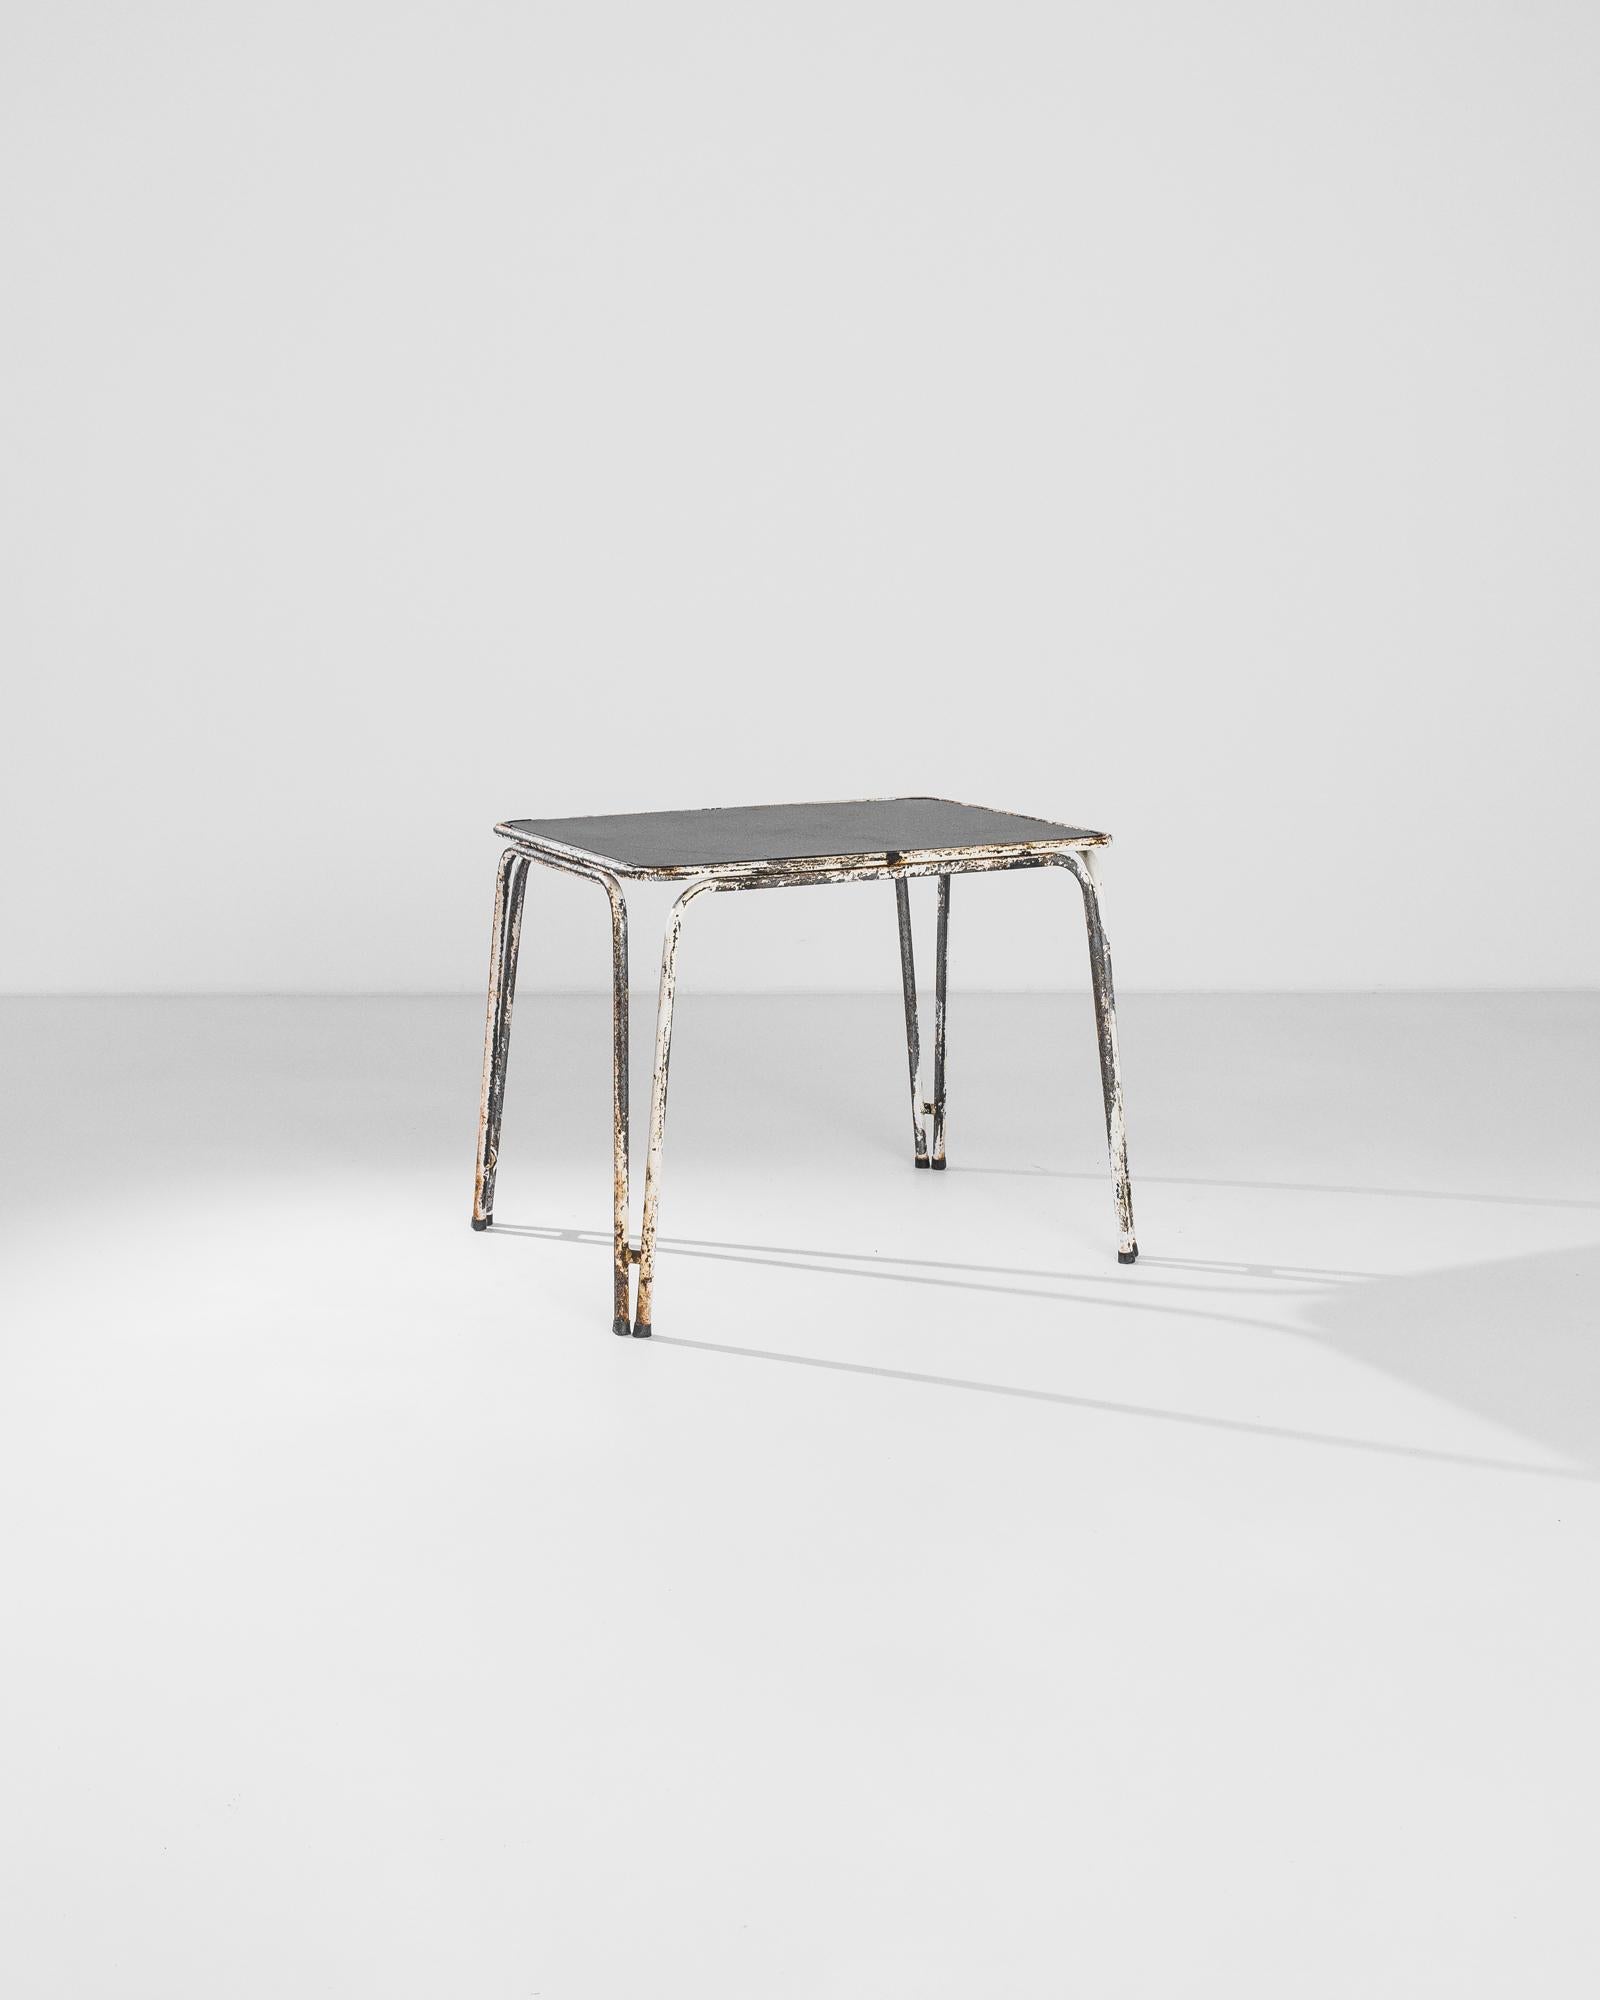 Ein Gartentisch aus Metall aus Frankreich, hergestellt um 1960. Die Beine aus weiß patiniertem, gebogenem Metall tragen eine schwarze Tischplatte, die zum Entspannen einlädt. Stellen Sie sich vor: Sie liegen in Tennisschuhen in der Sonne, kein Platz